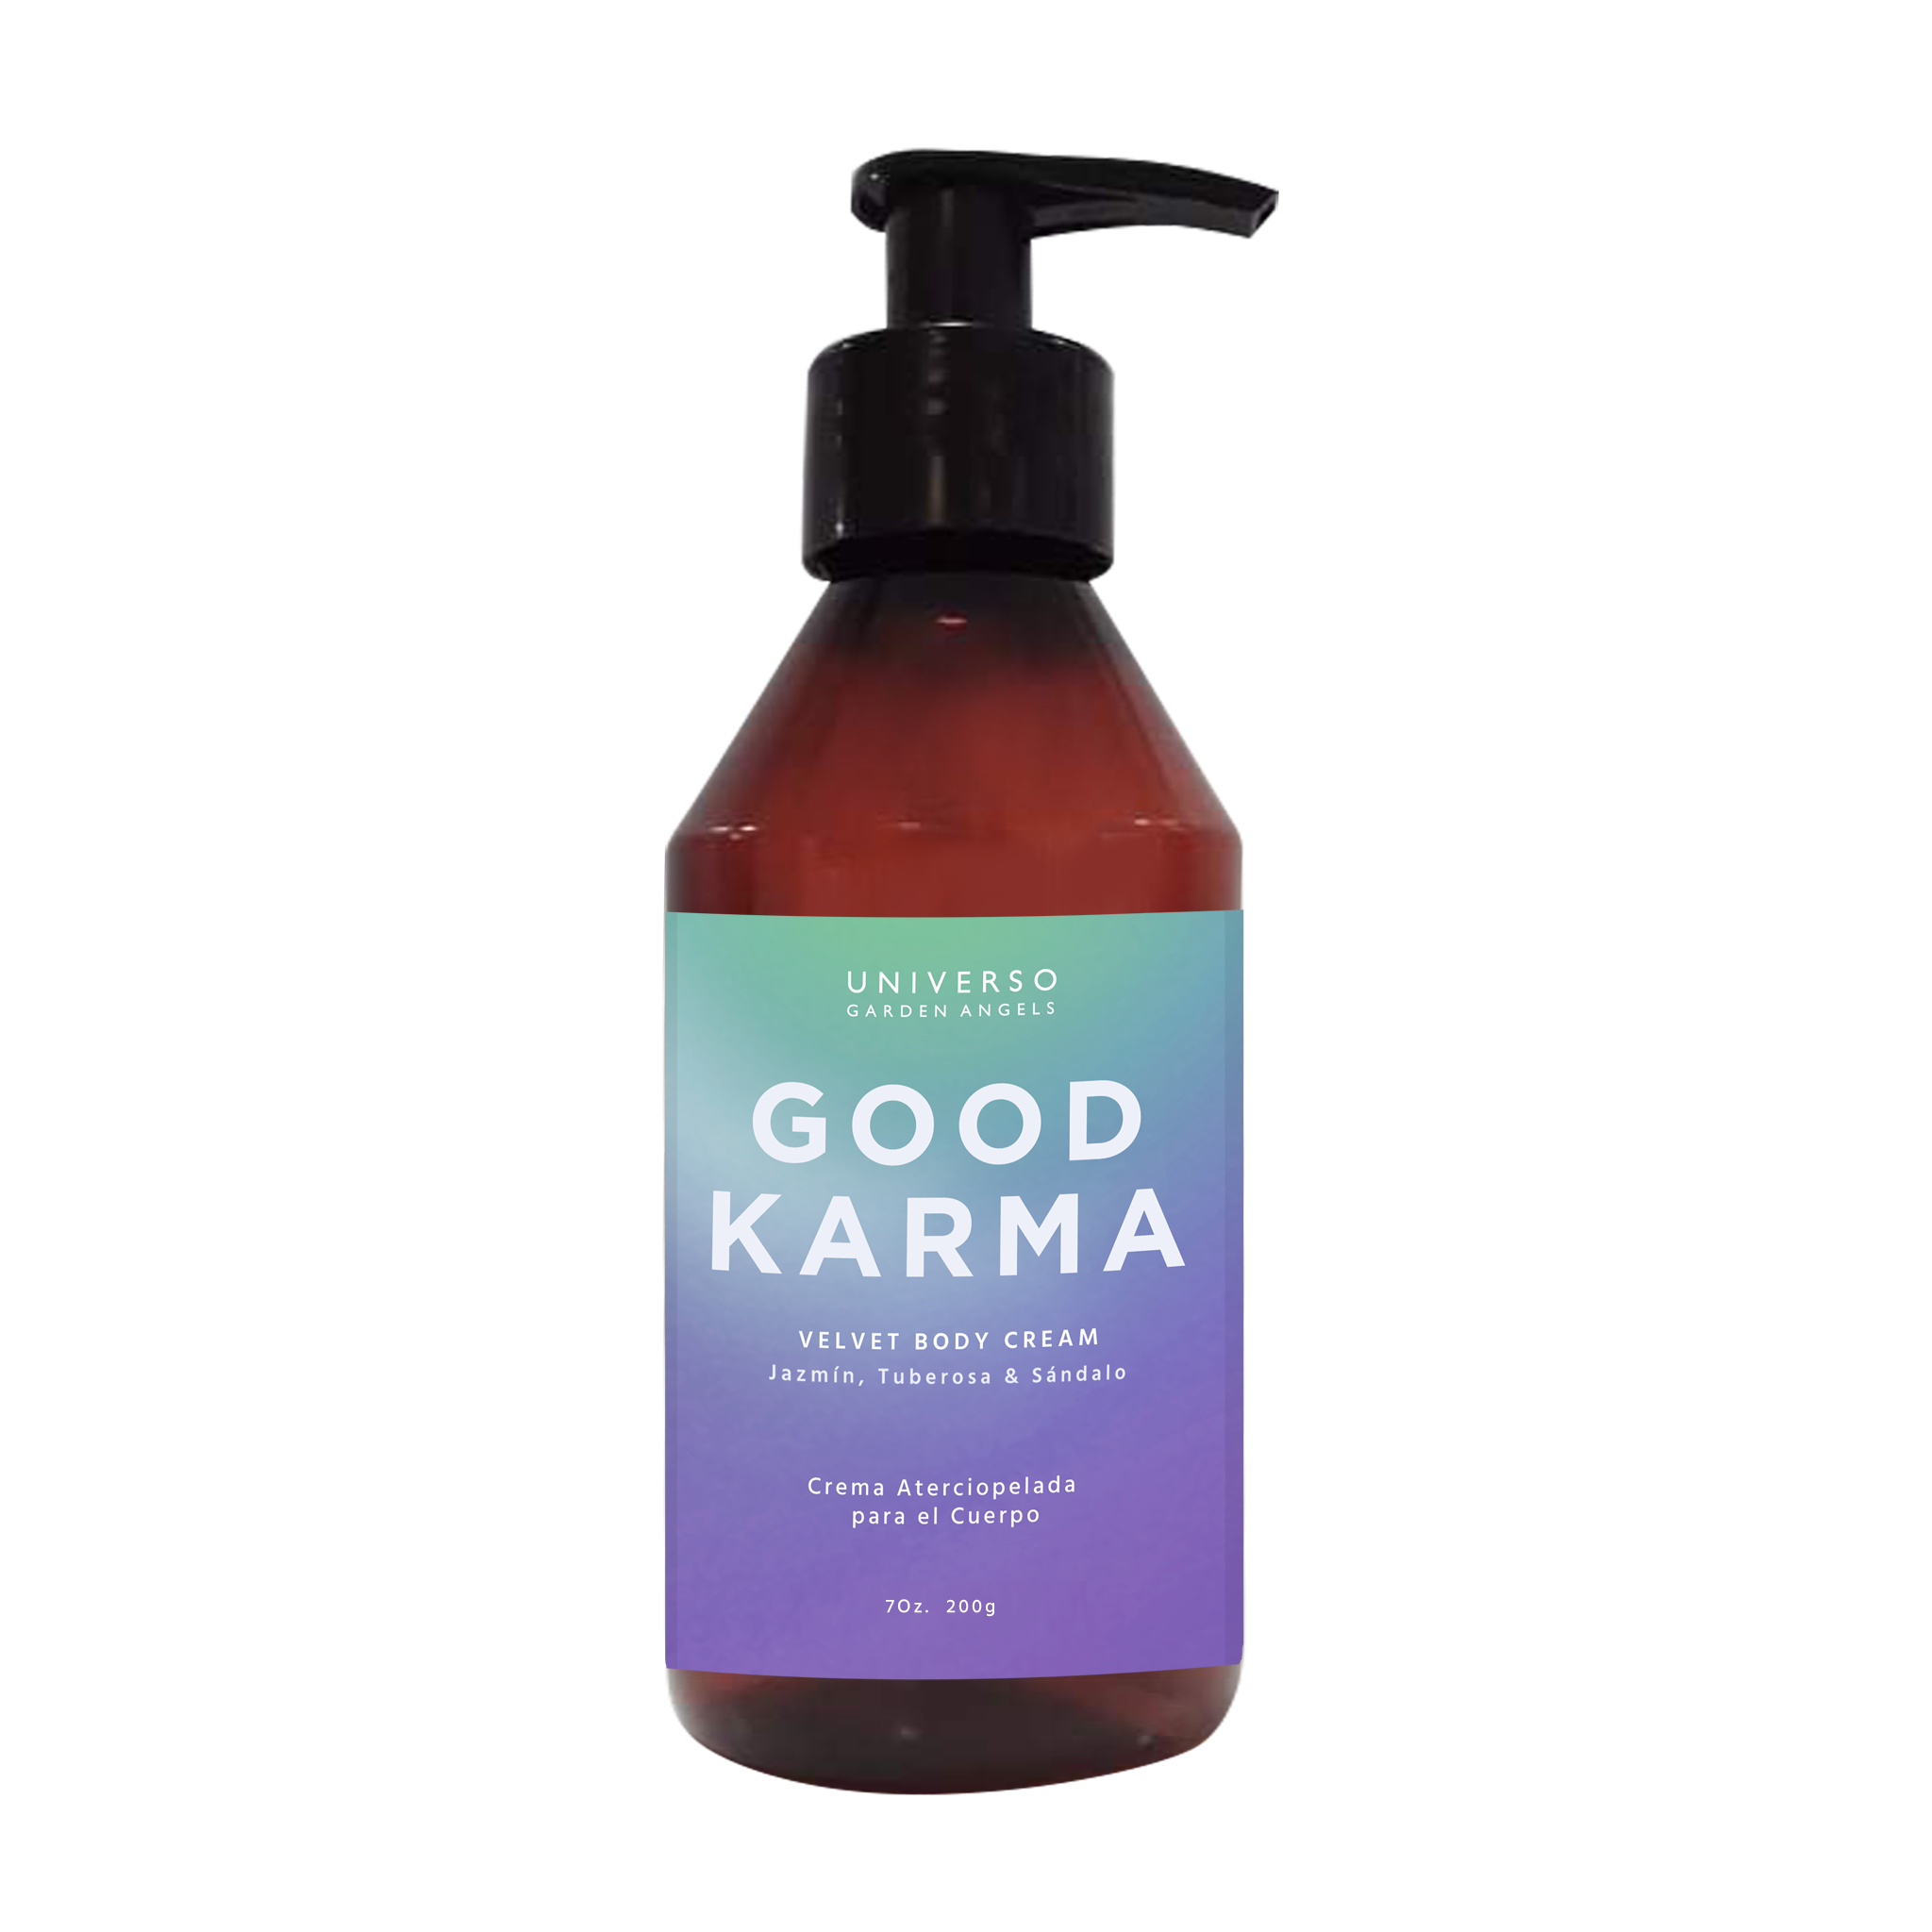 Crema Aterciopelada para el cuerpo Good Karma